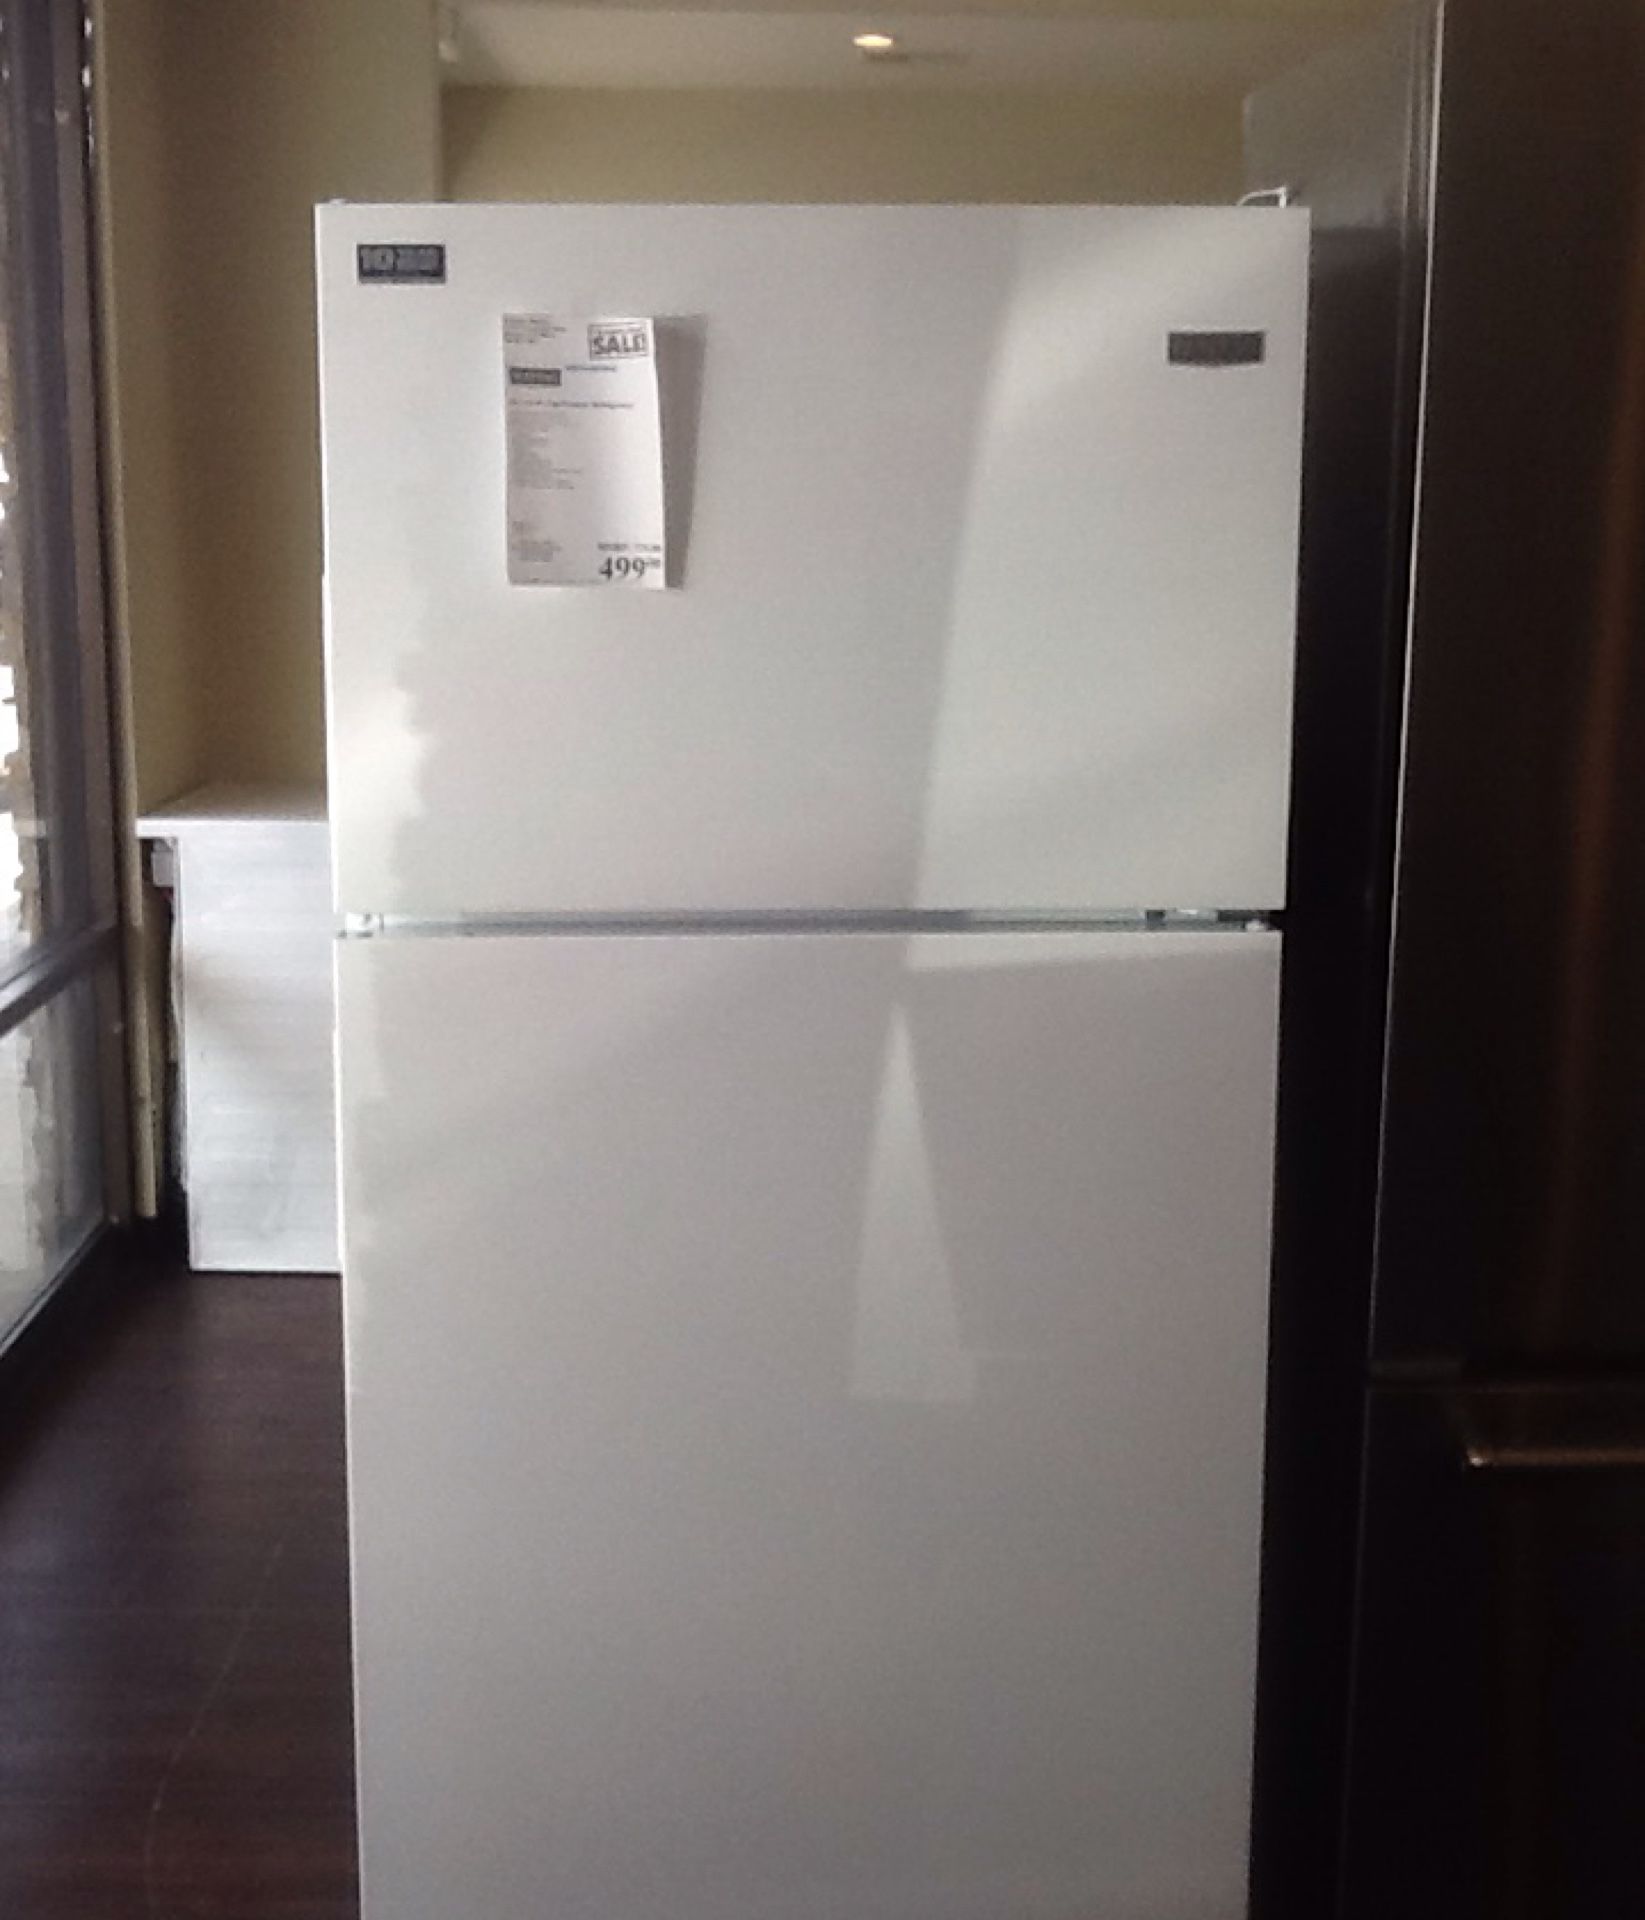 New open box maytag refrigerator MRT118FFFH